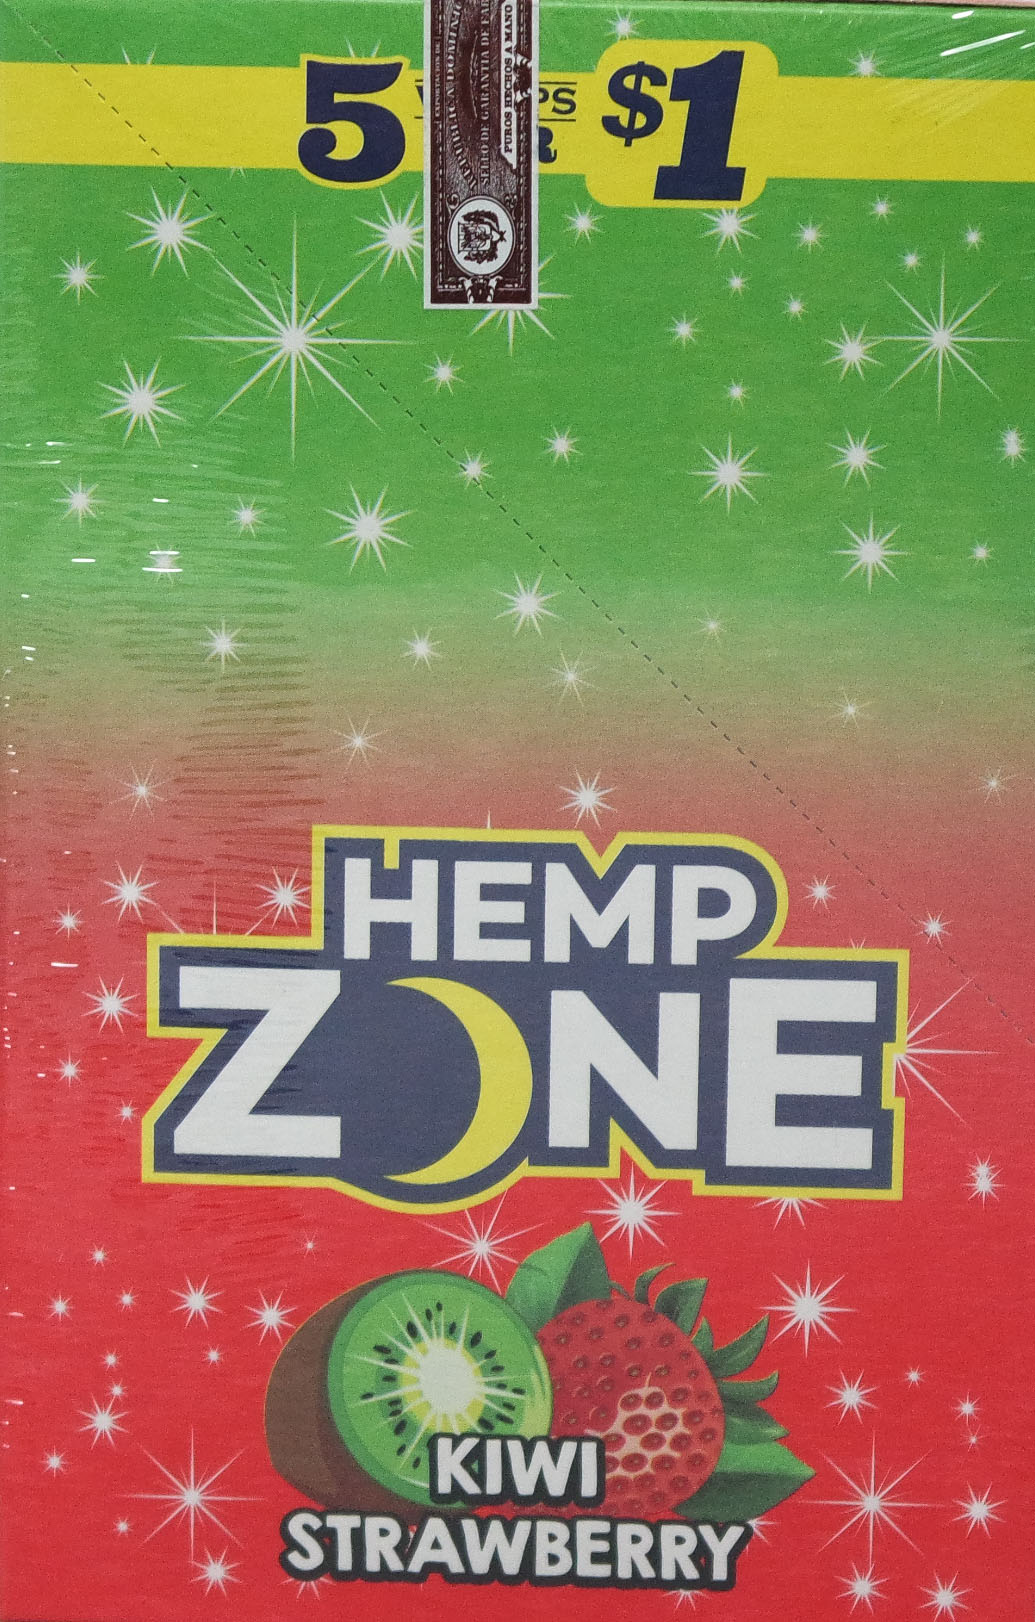 Hemp zone kiwi strawberry wraps 5/$1 15/5pk